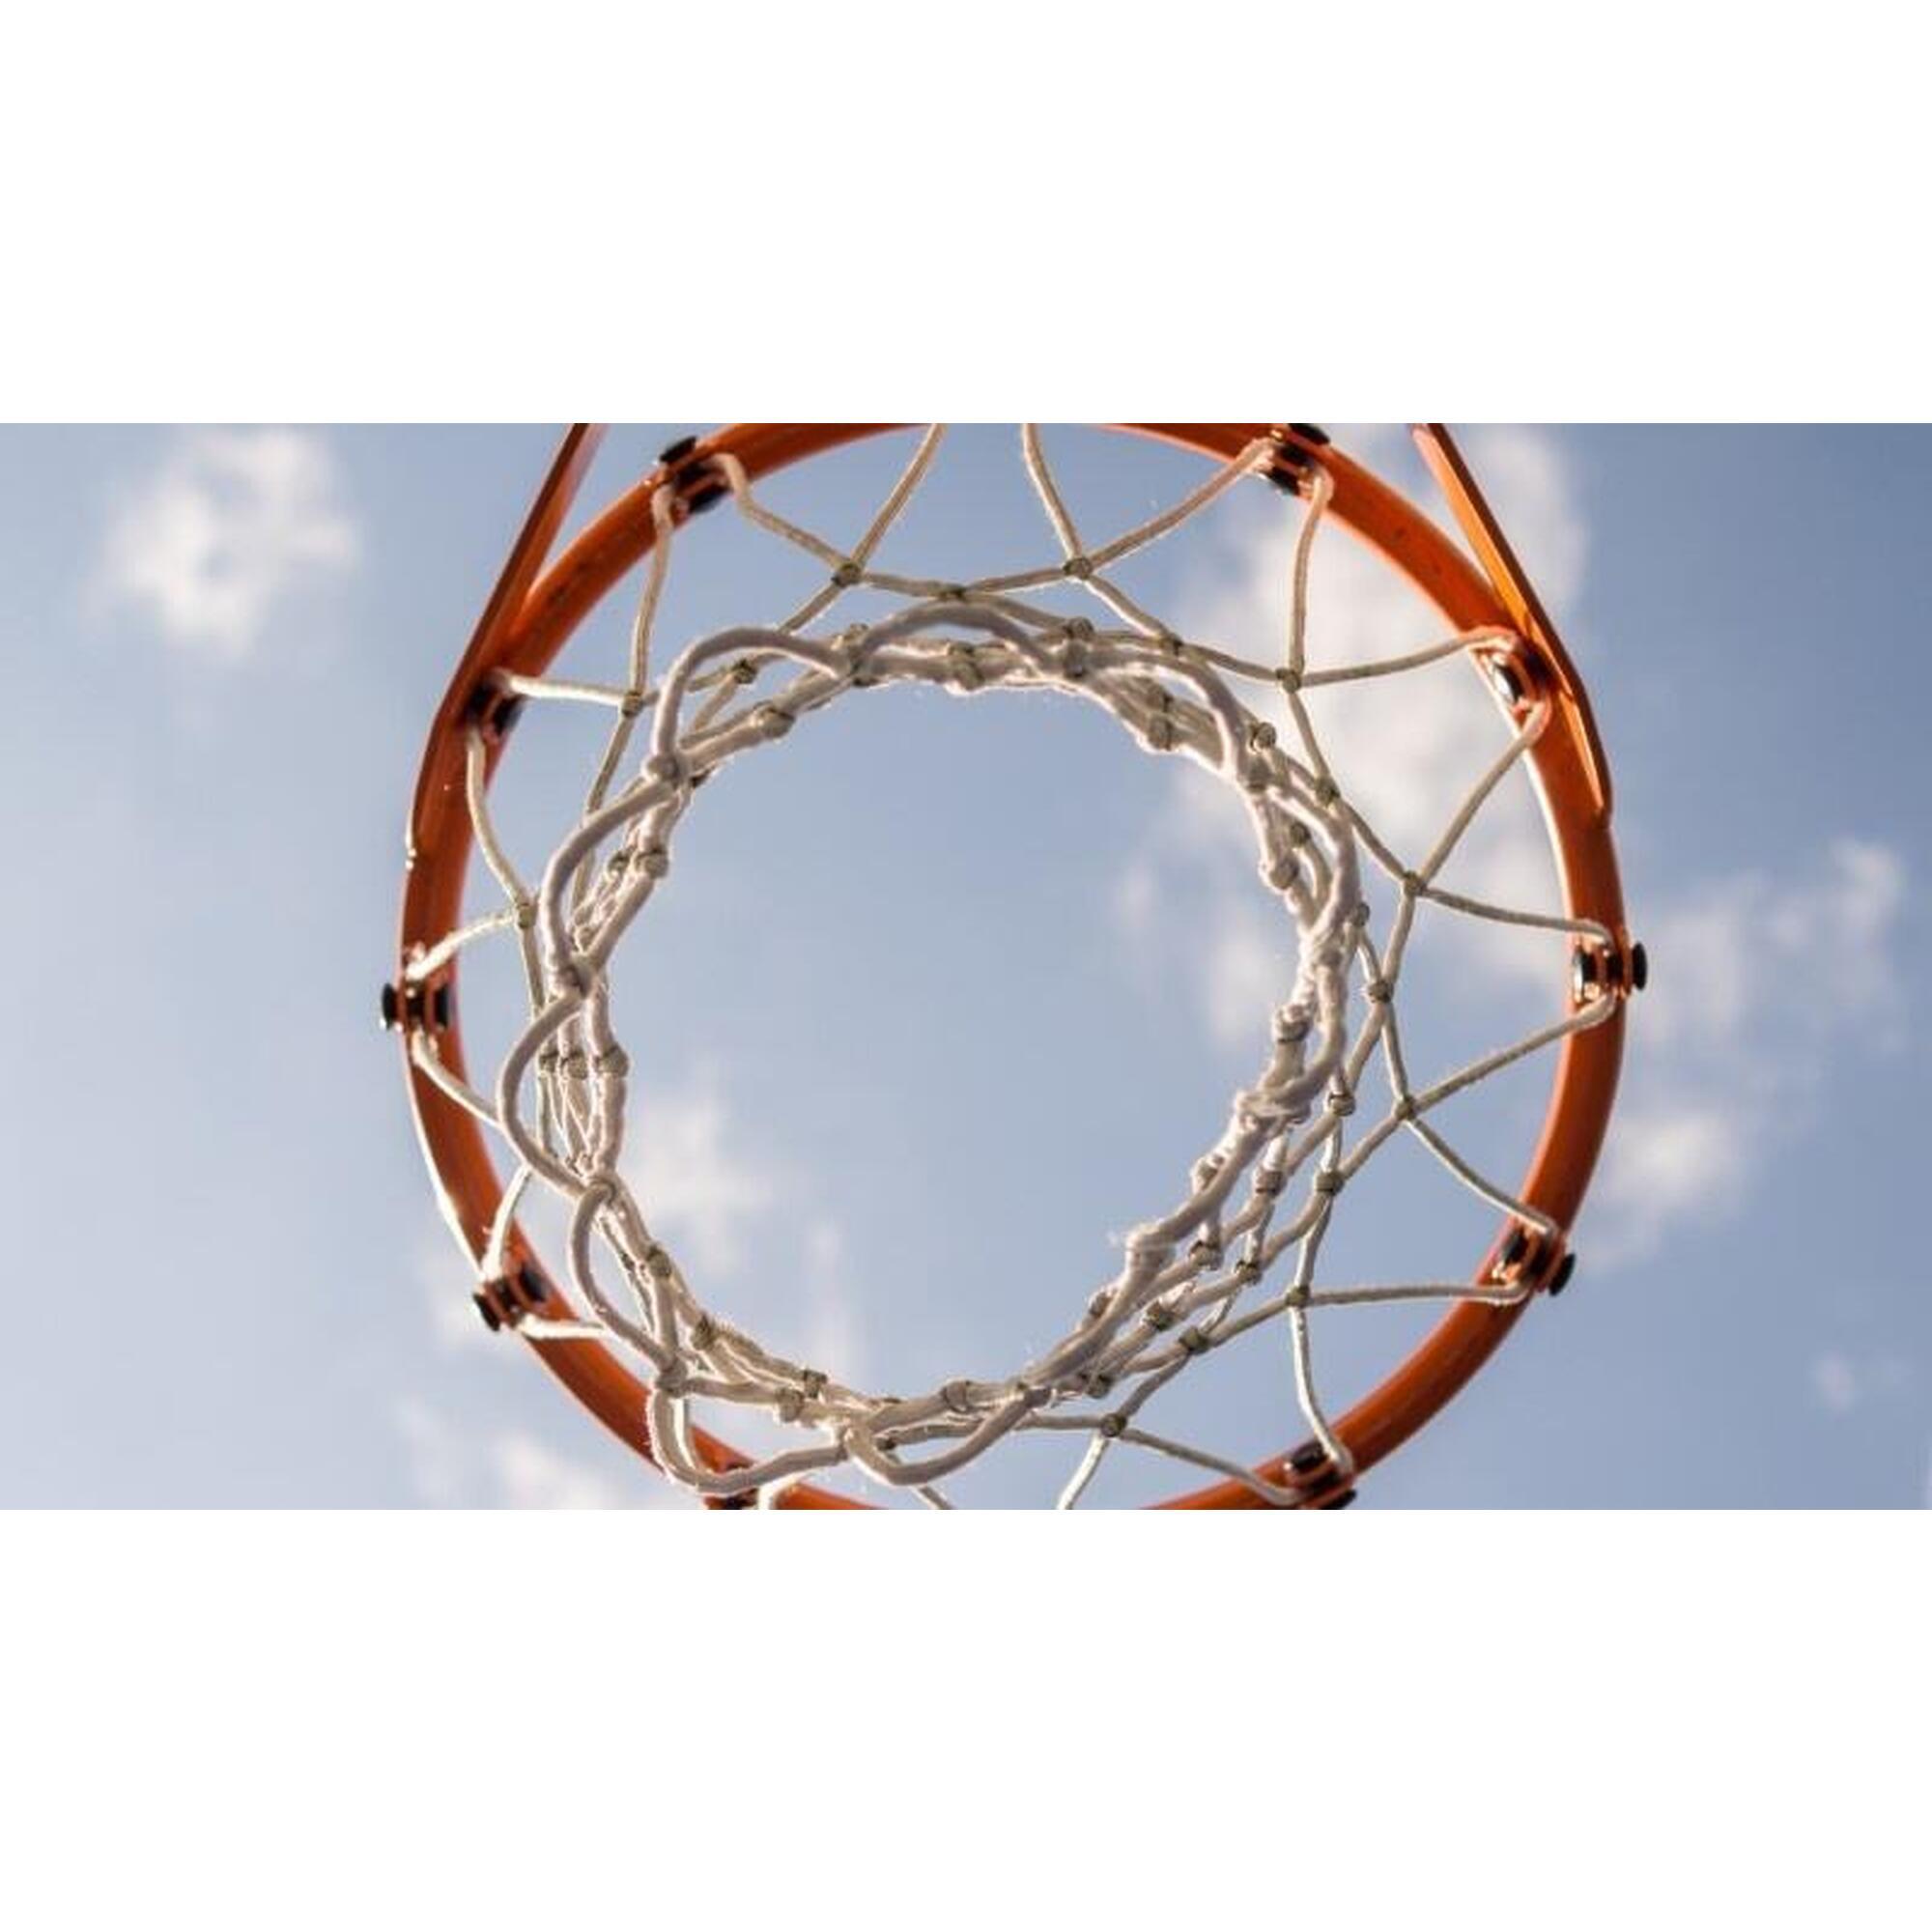 Basketbalpaal - Memphis - 190 cm tot 260 cm hoog - Verstelbaar